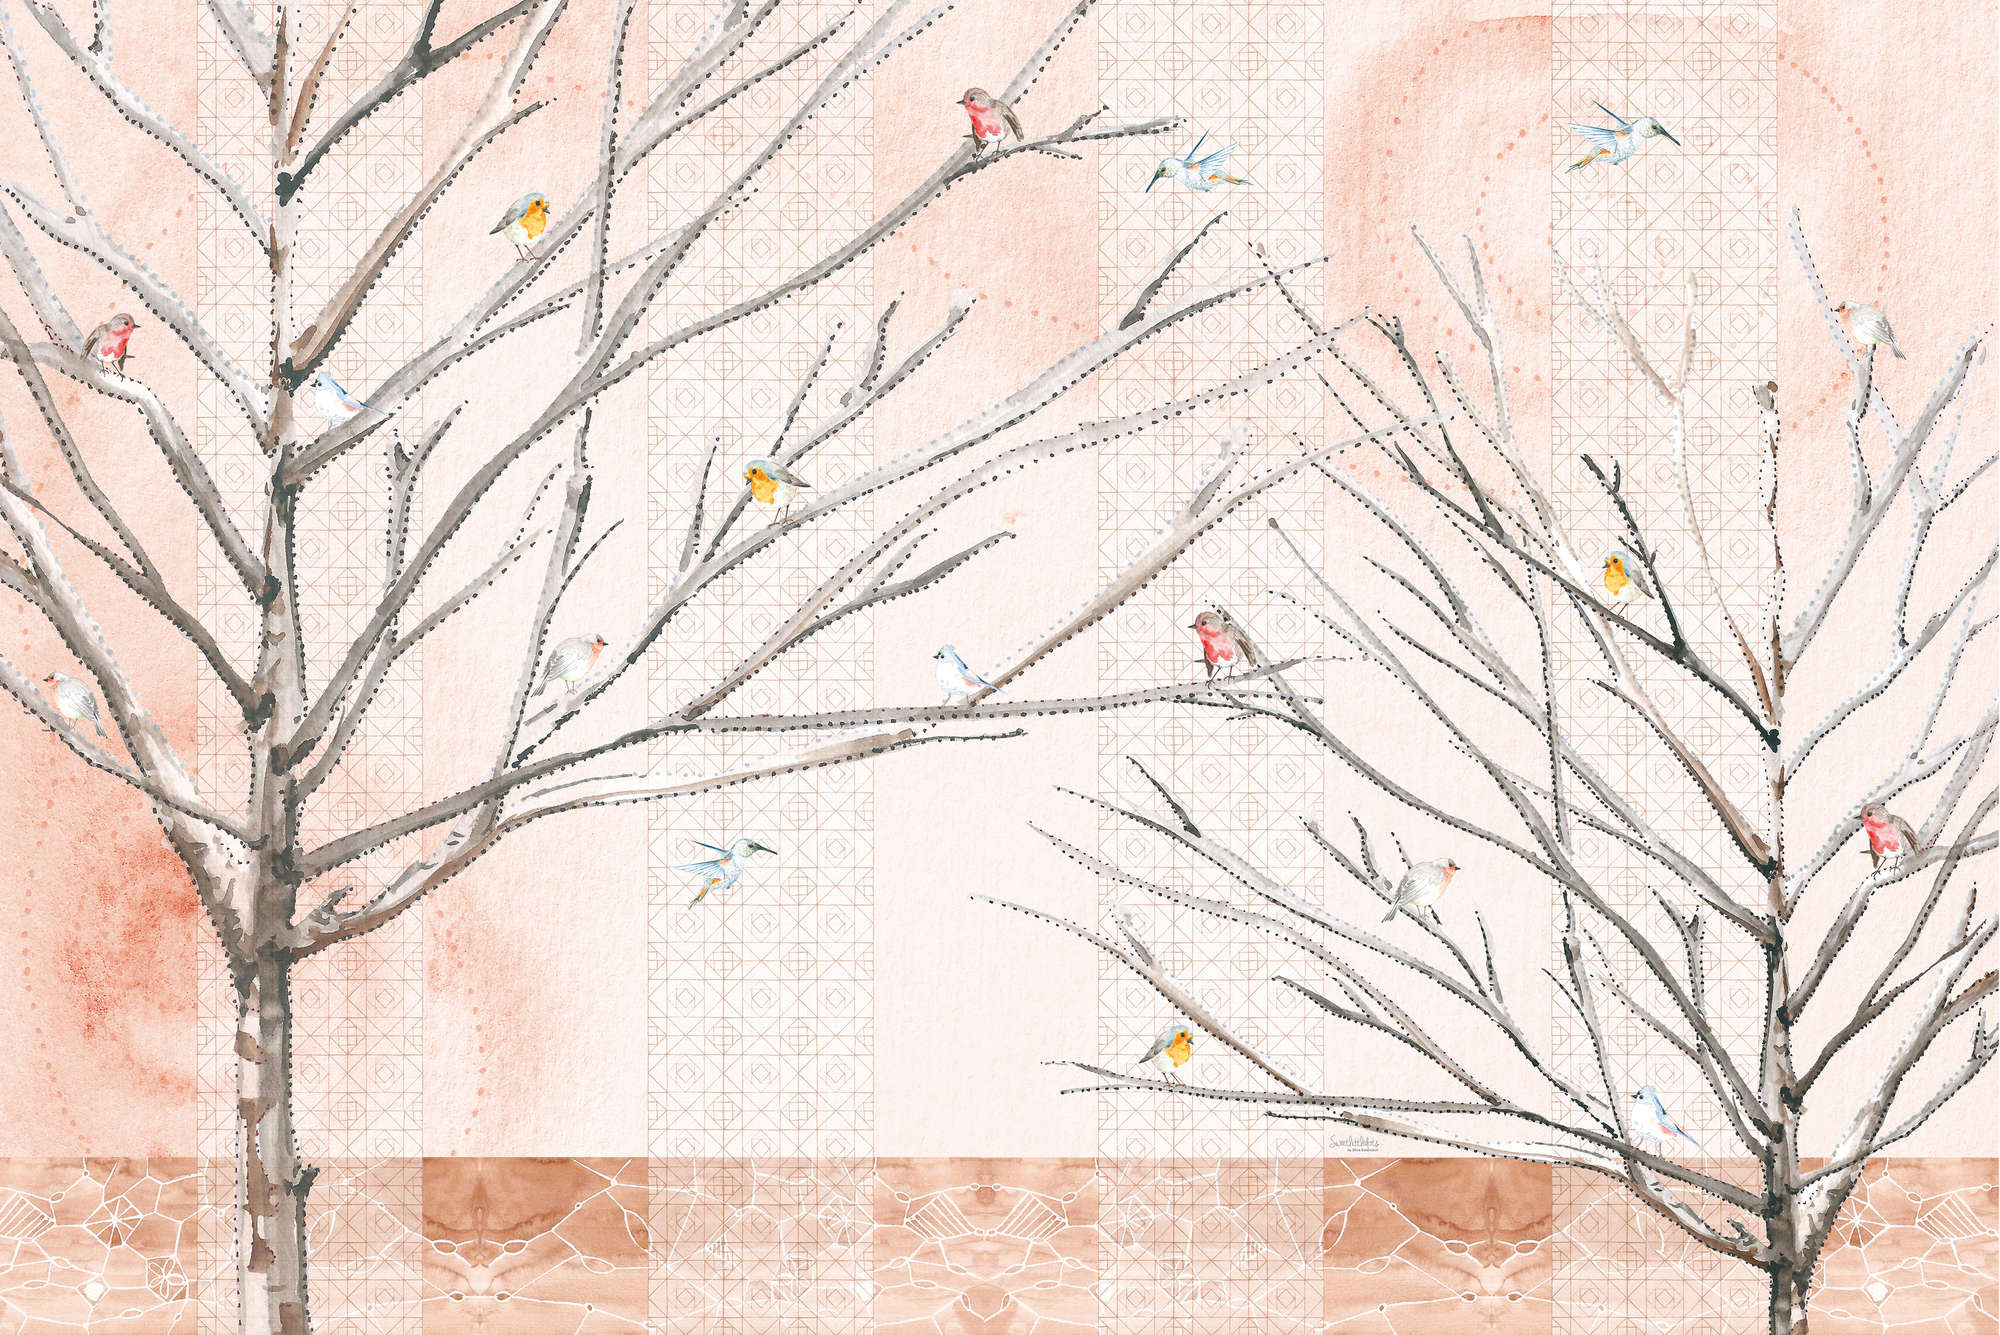             Papel pintado artístico Árboles con pájaros en beige y marrón sobre tejido sin tejer liso perlado
        